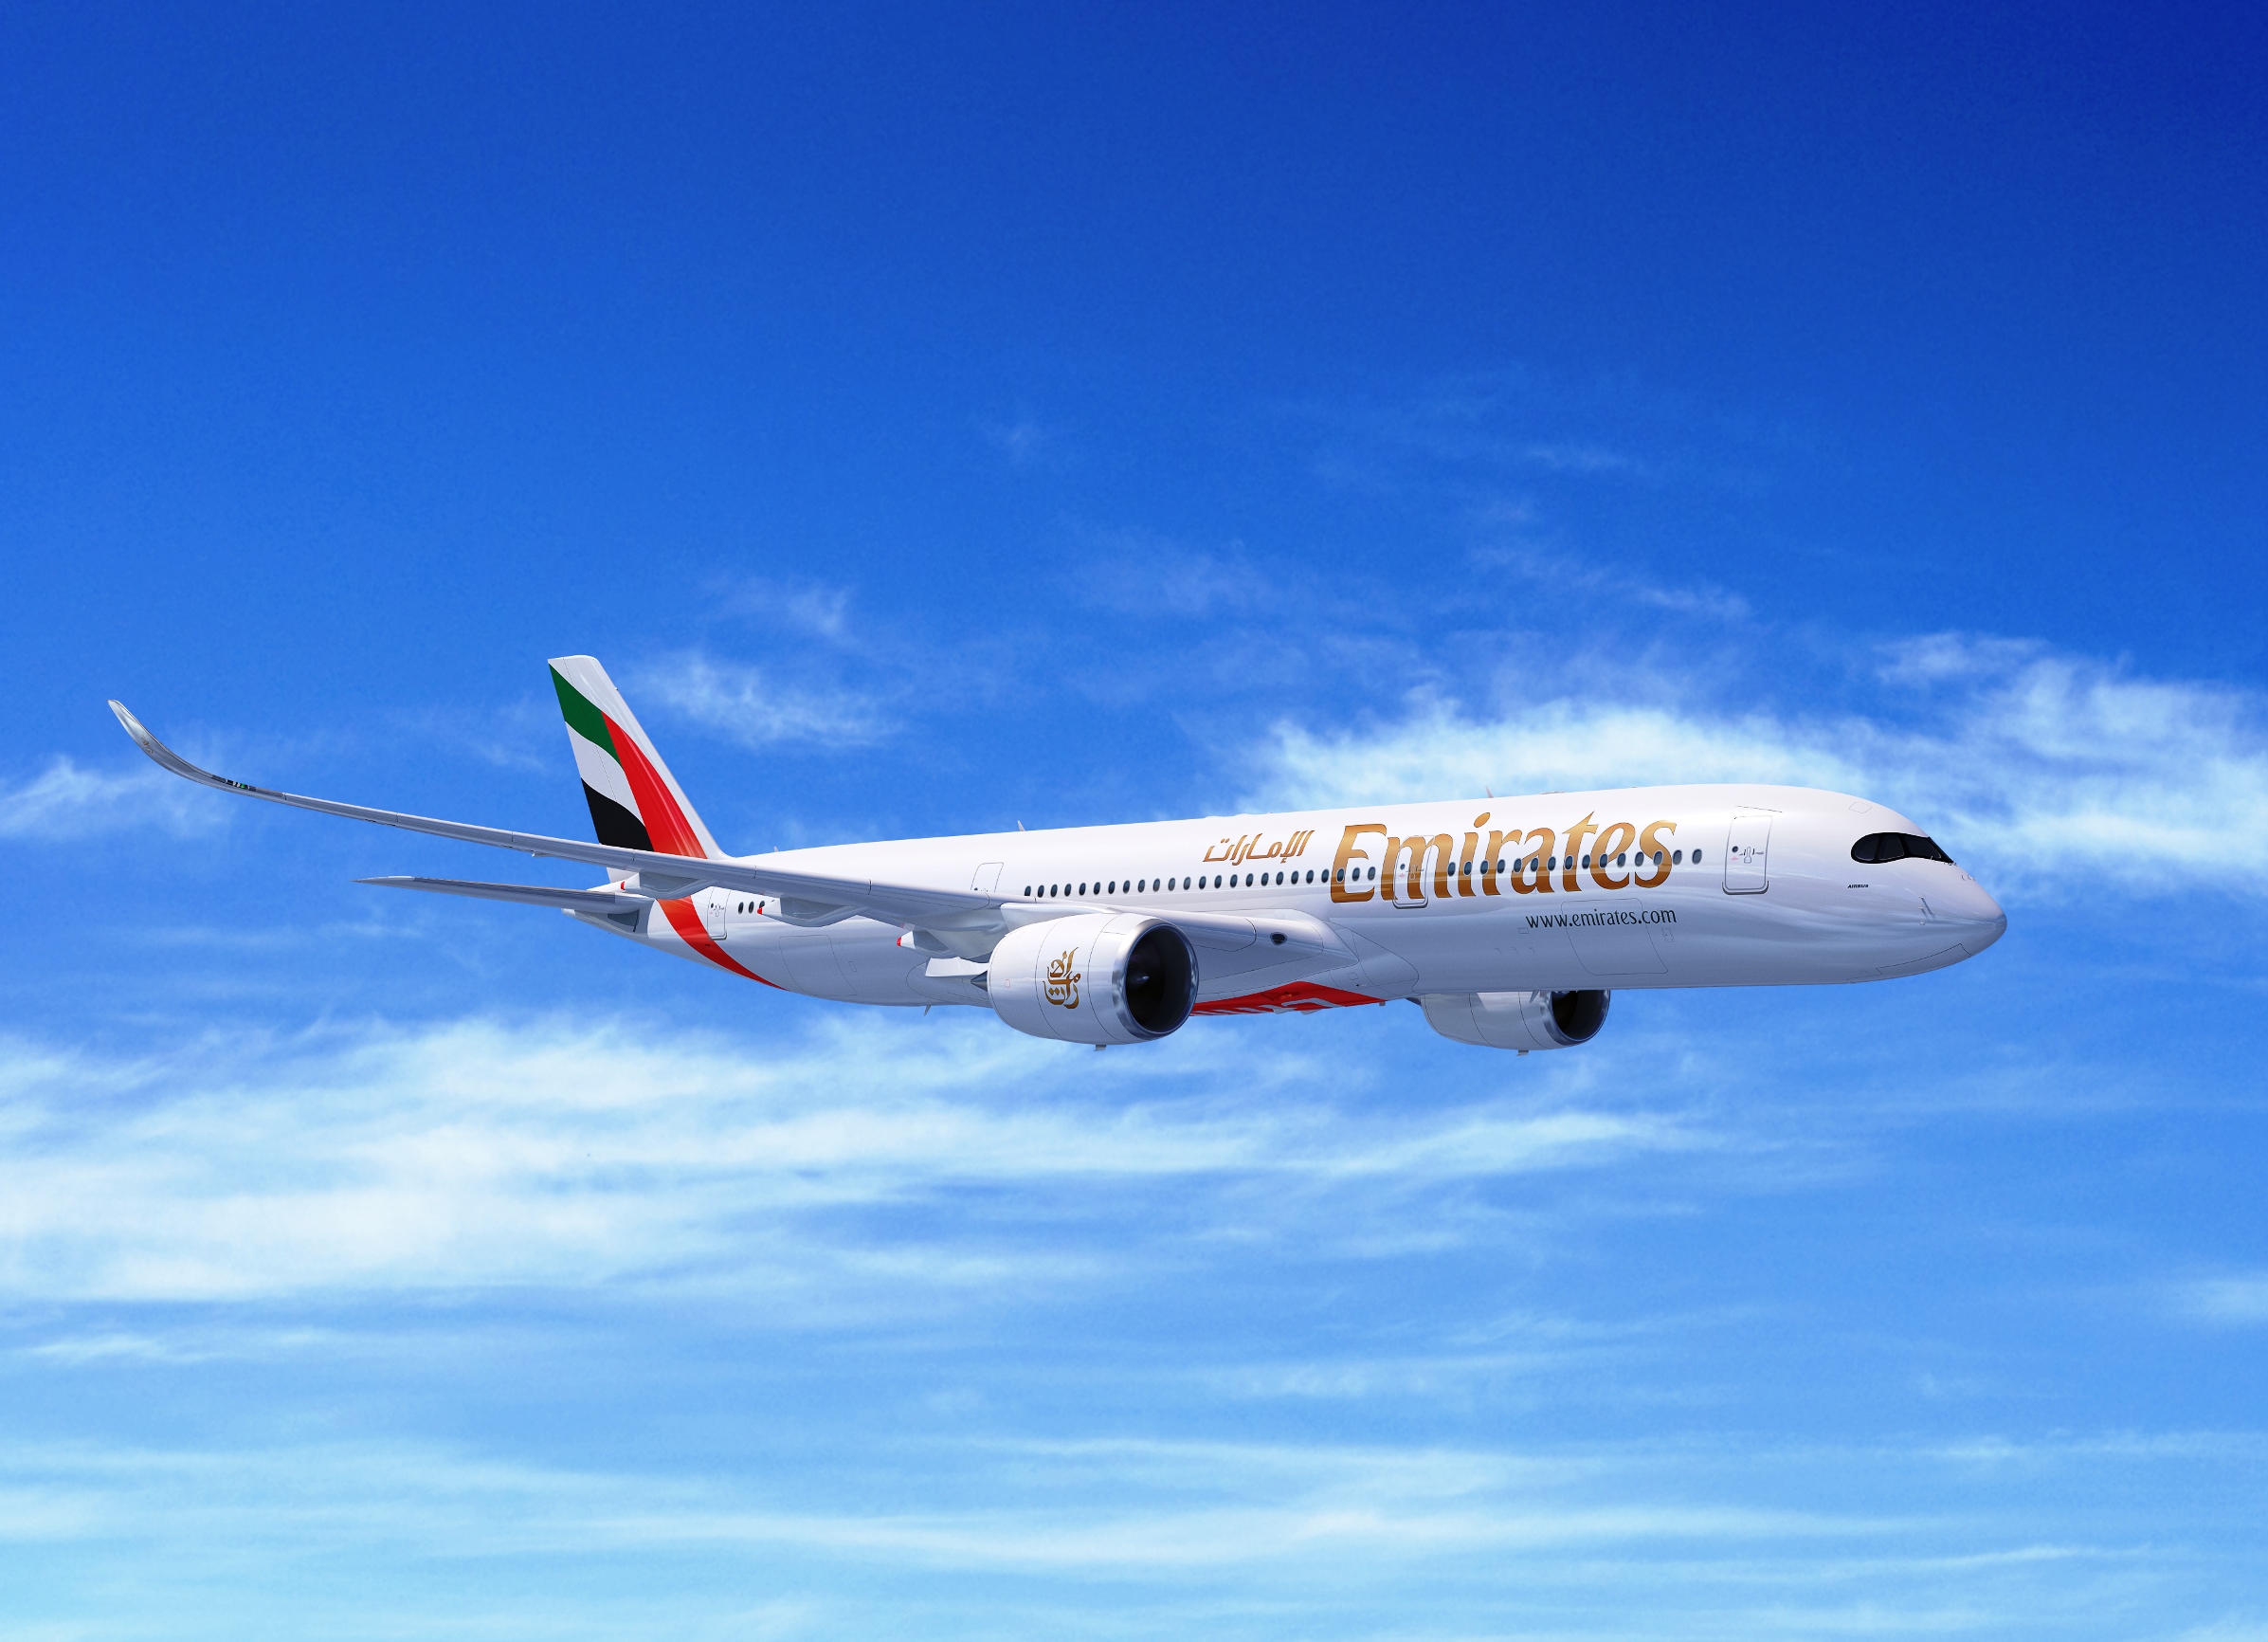 Emirates - Airbus A350